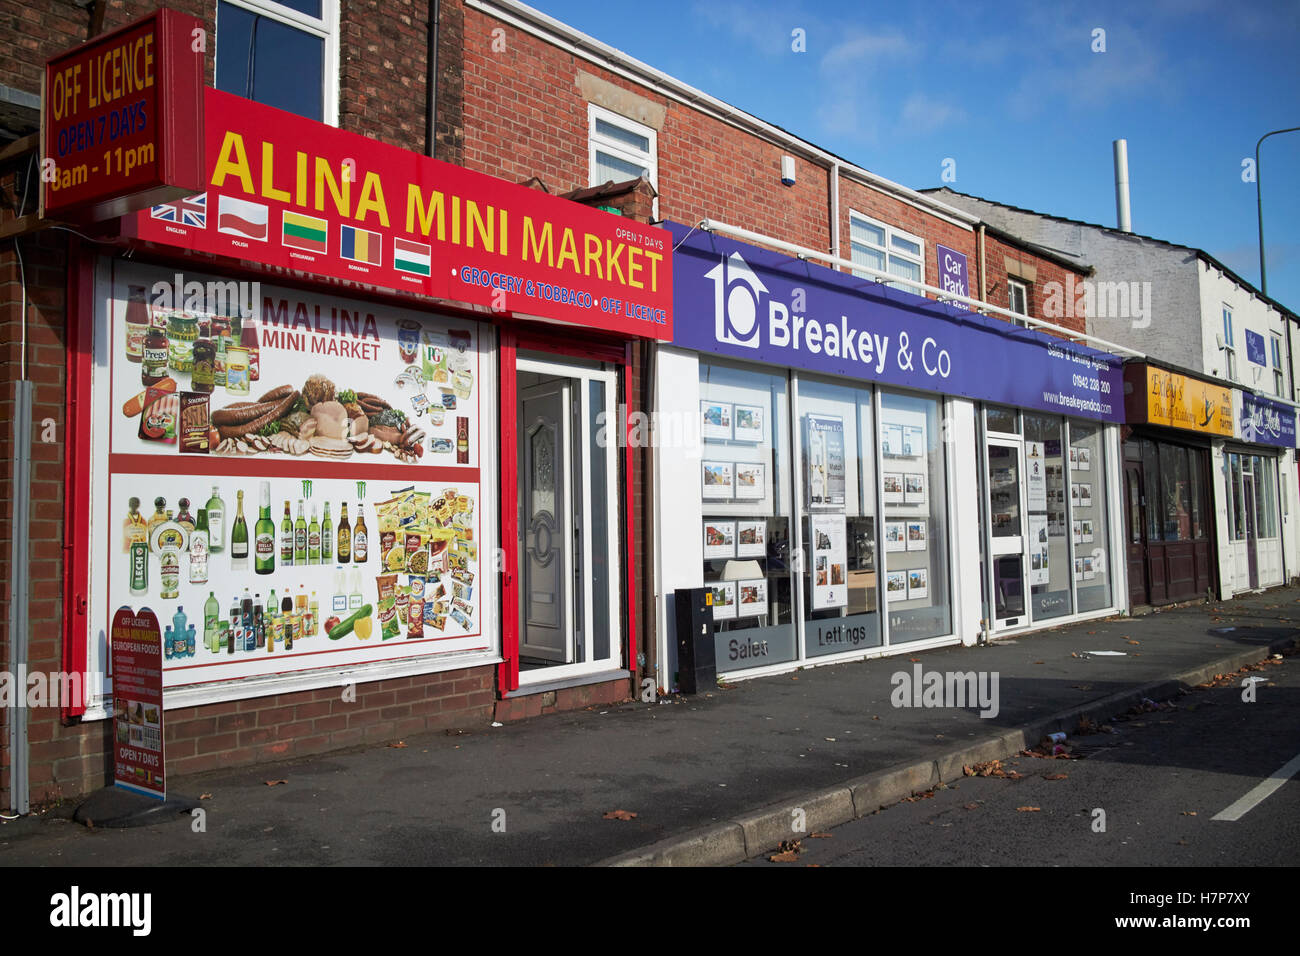 L'alimentation de l'Europe de mini-marché et d'boutiques dans une rue de Wigan angleterre uk Banque D'Images